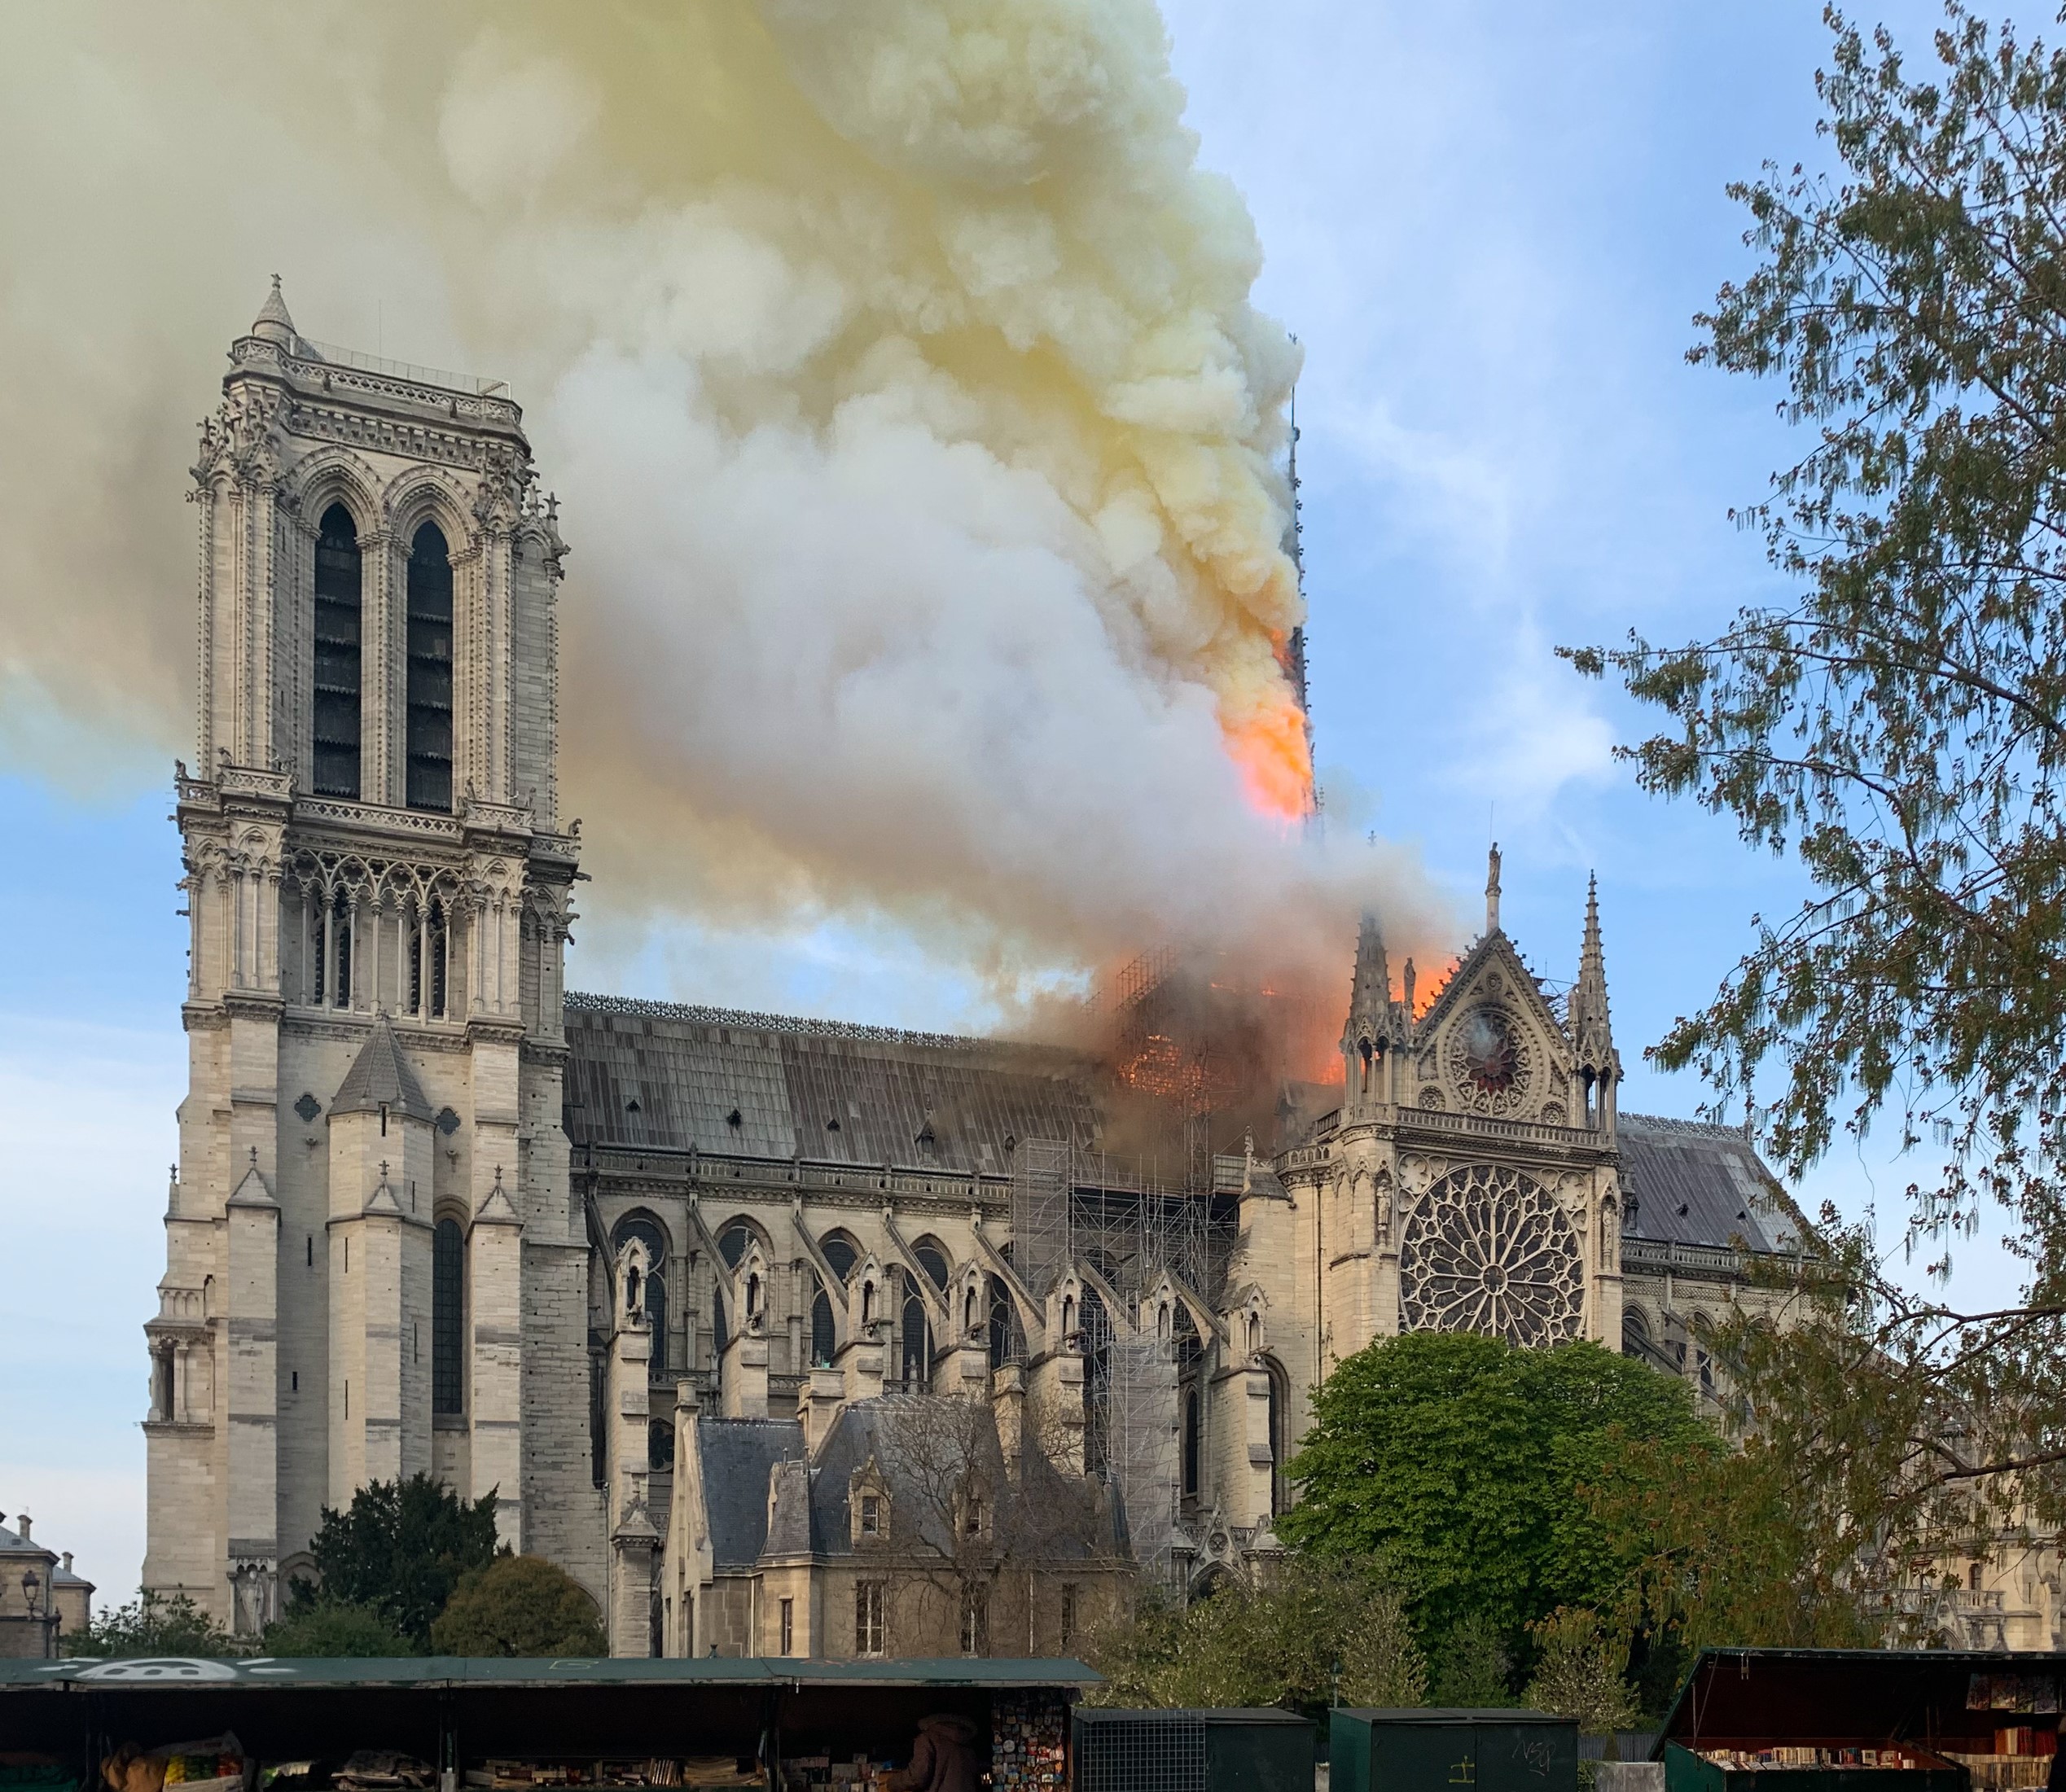 incendiul de la Catedrala Notre Dame, sursa foto wikipedia